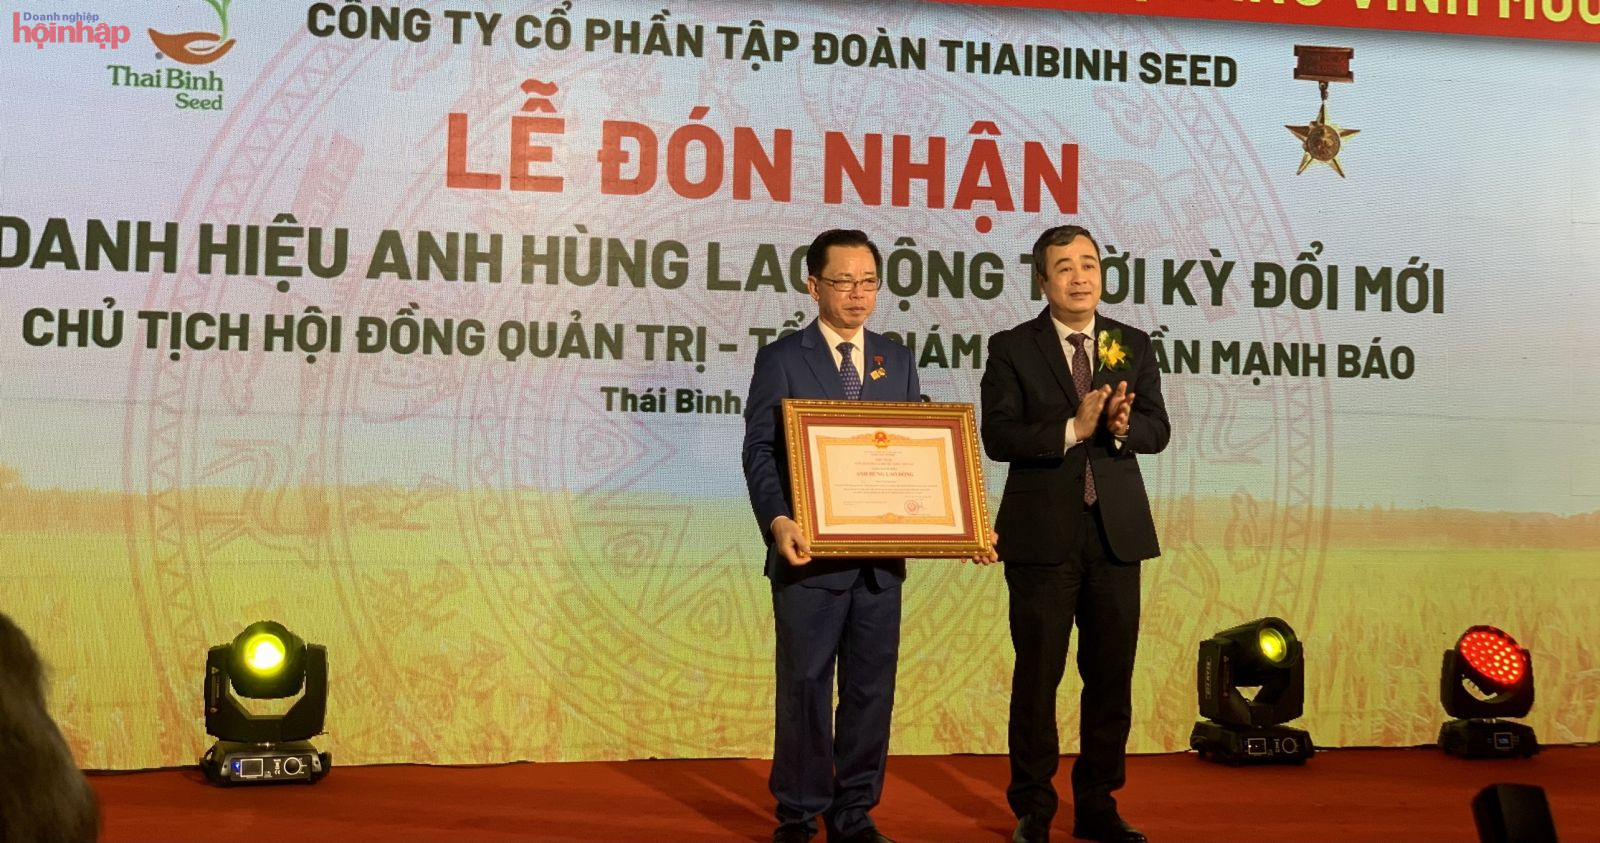 Tập đoàn ThaiBinh Seed đón nhận Danh hiệu Anh hùng lao động thời kỳ đổi mới